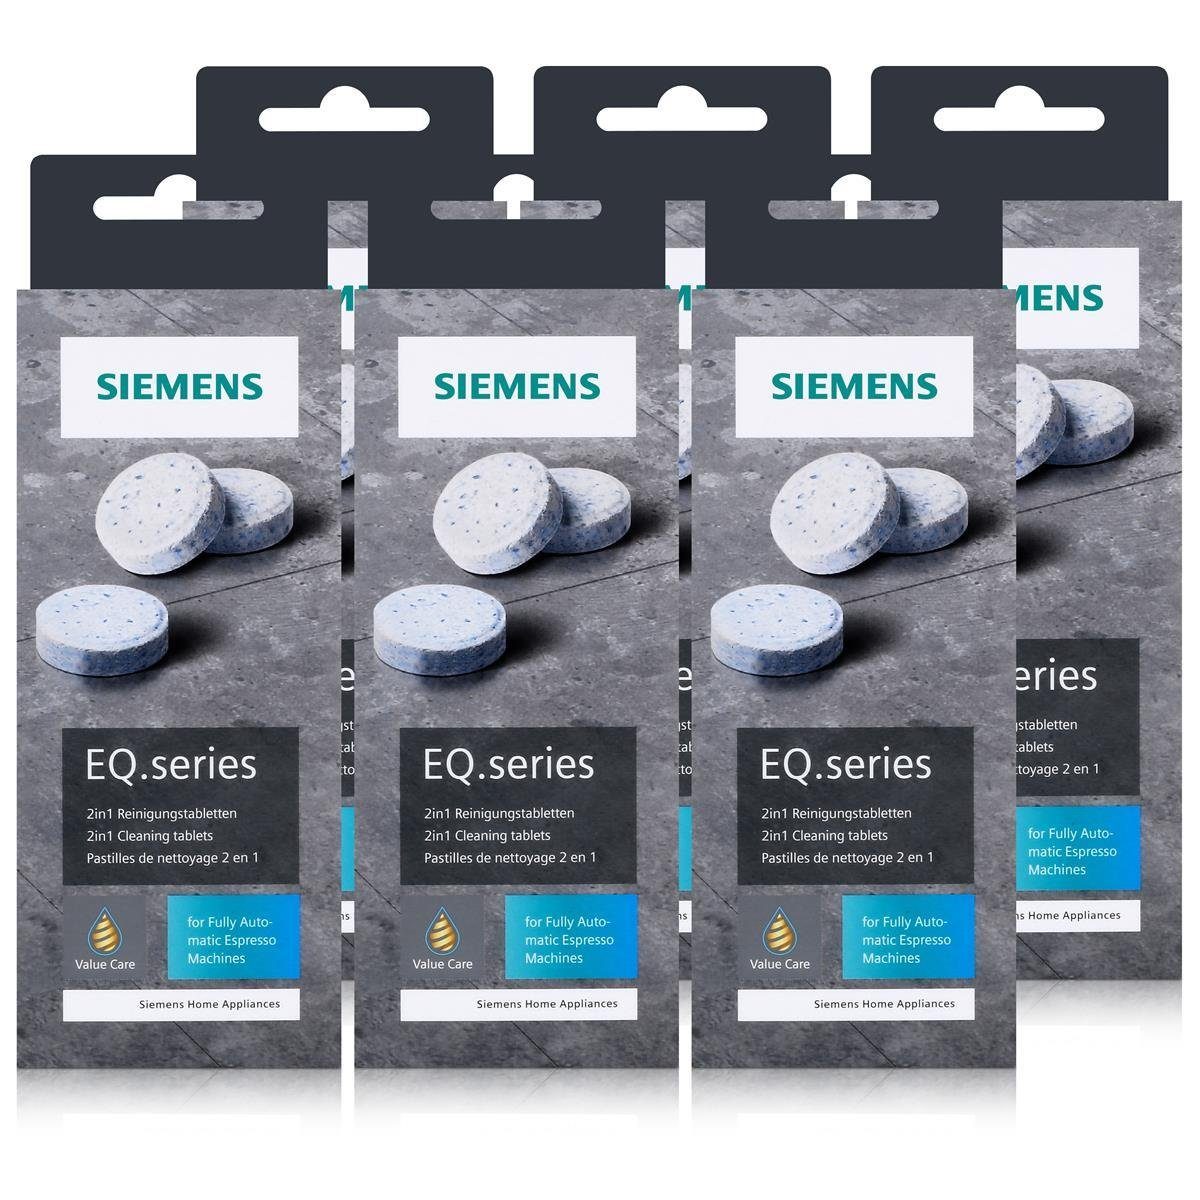 EQ.series TZ80001A SIEMENS - Reinigungstabletten 22g bestes Aroma Reinigungstabletten Siemens Für